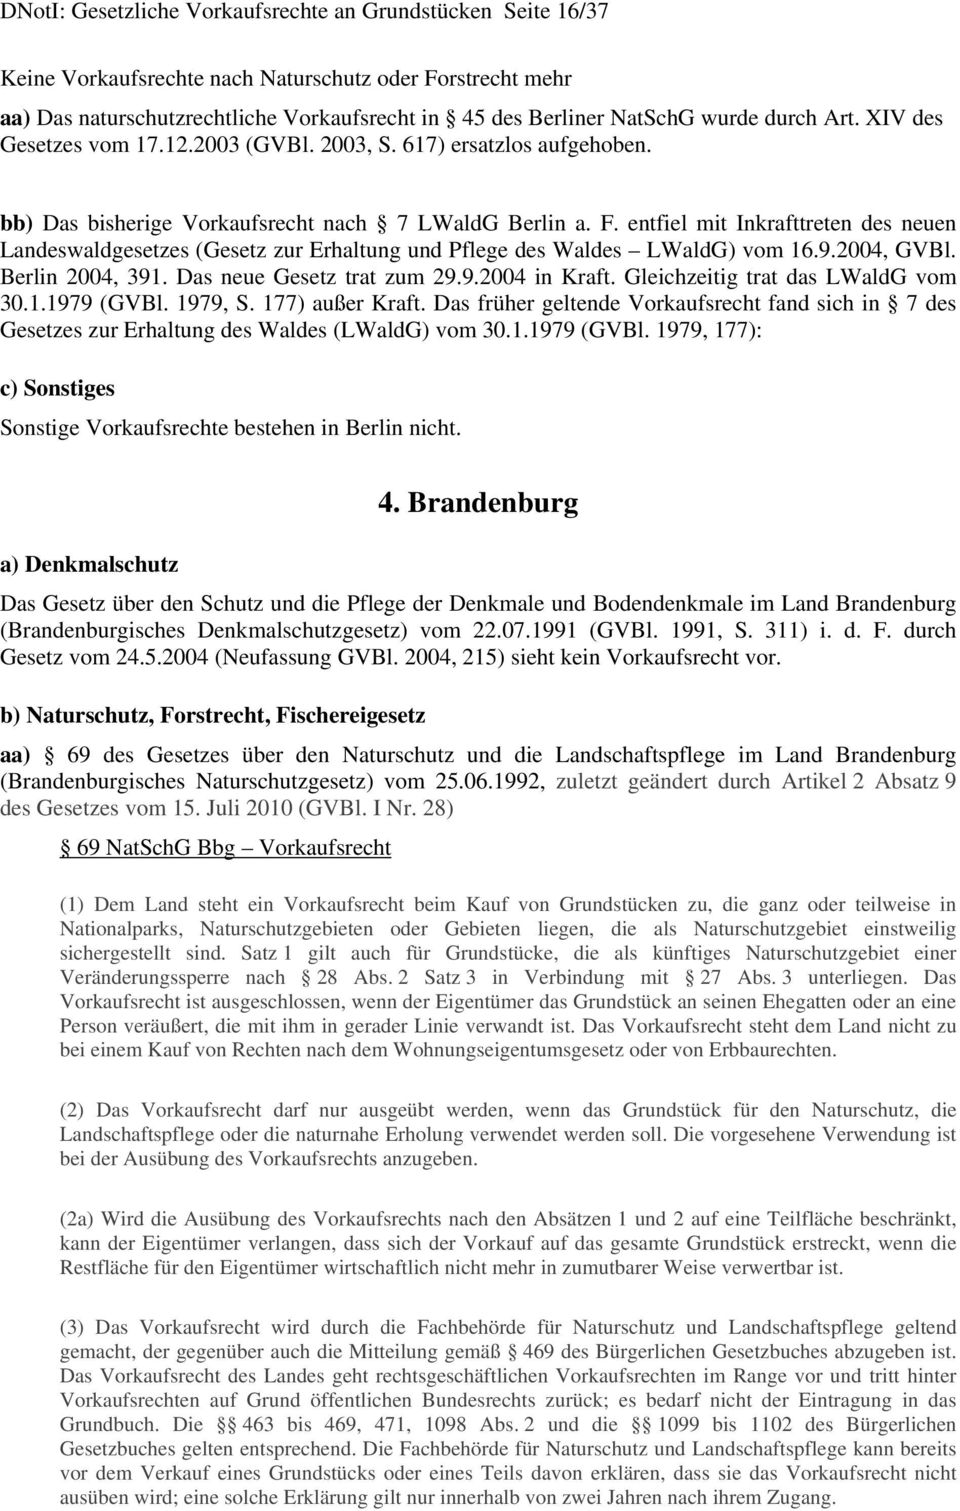 617) ersatzlos aufgehoben. bb) Das bisherige Vorkaufsrecht nach 7 LWaldG Berlin a. F. entfiel mit Inkrafttreten des neuen Landeswaldgesetzes (Gesetz zur Erhaltung und Pflege des Waldes LWaldG) vom 16.